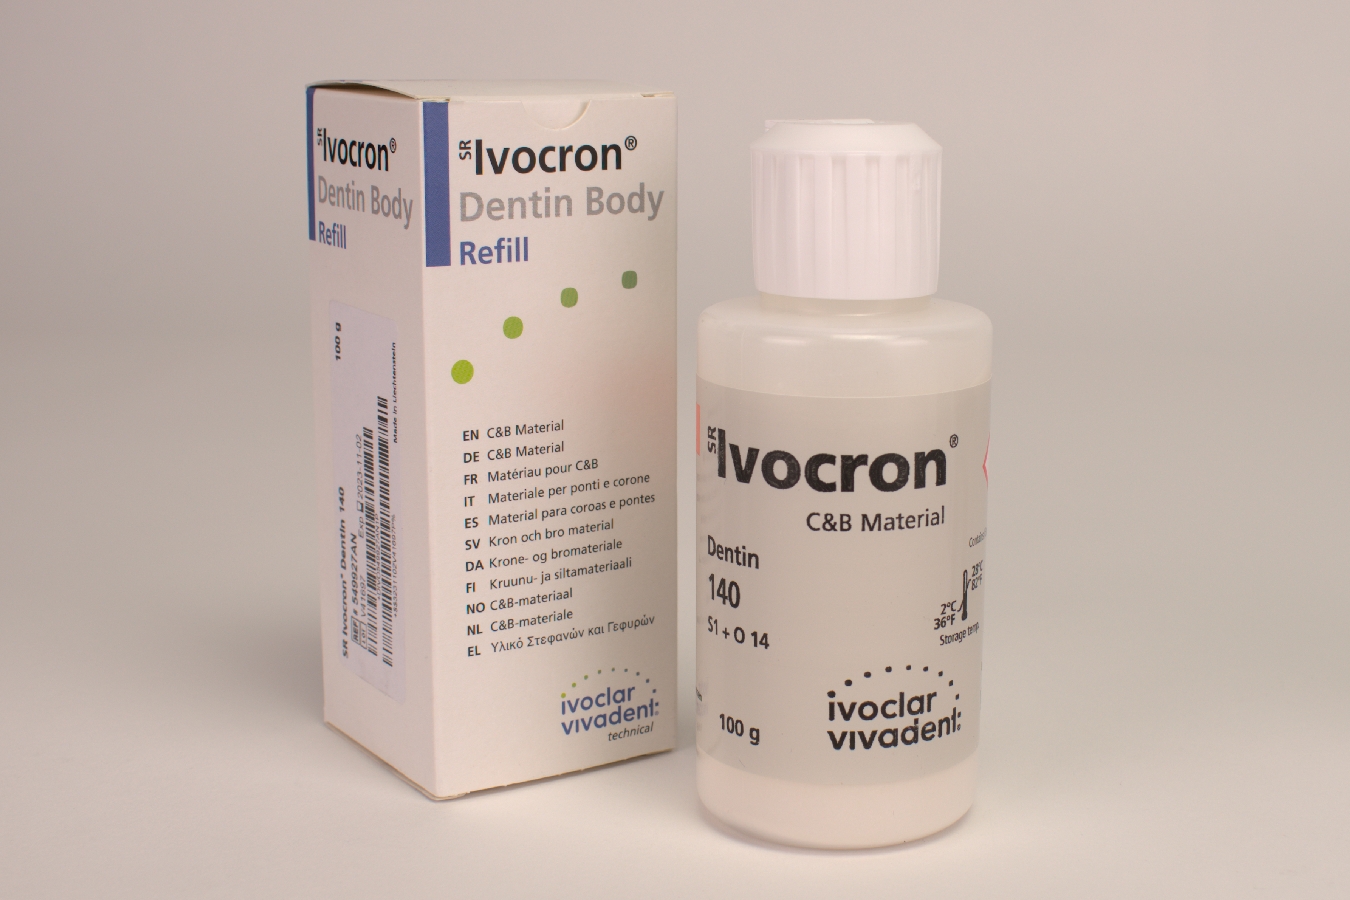 Ivocron D 140/1C      100g